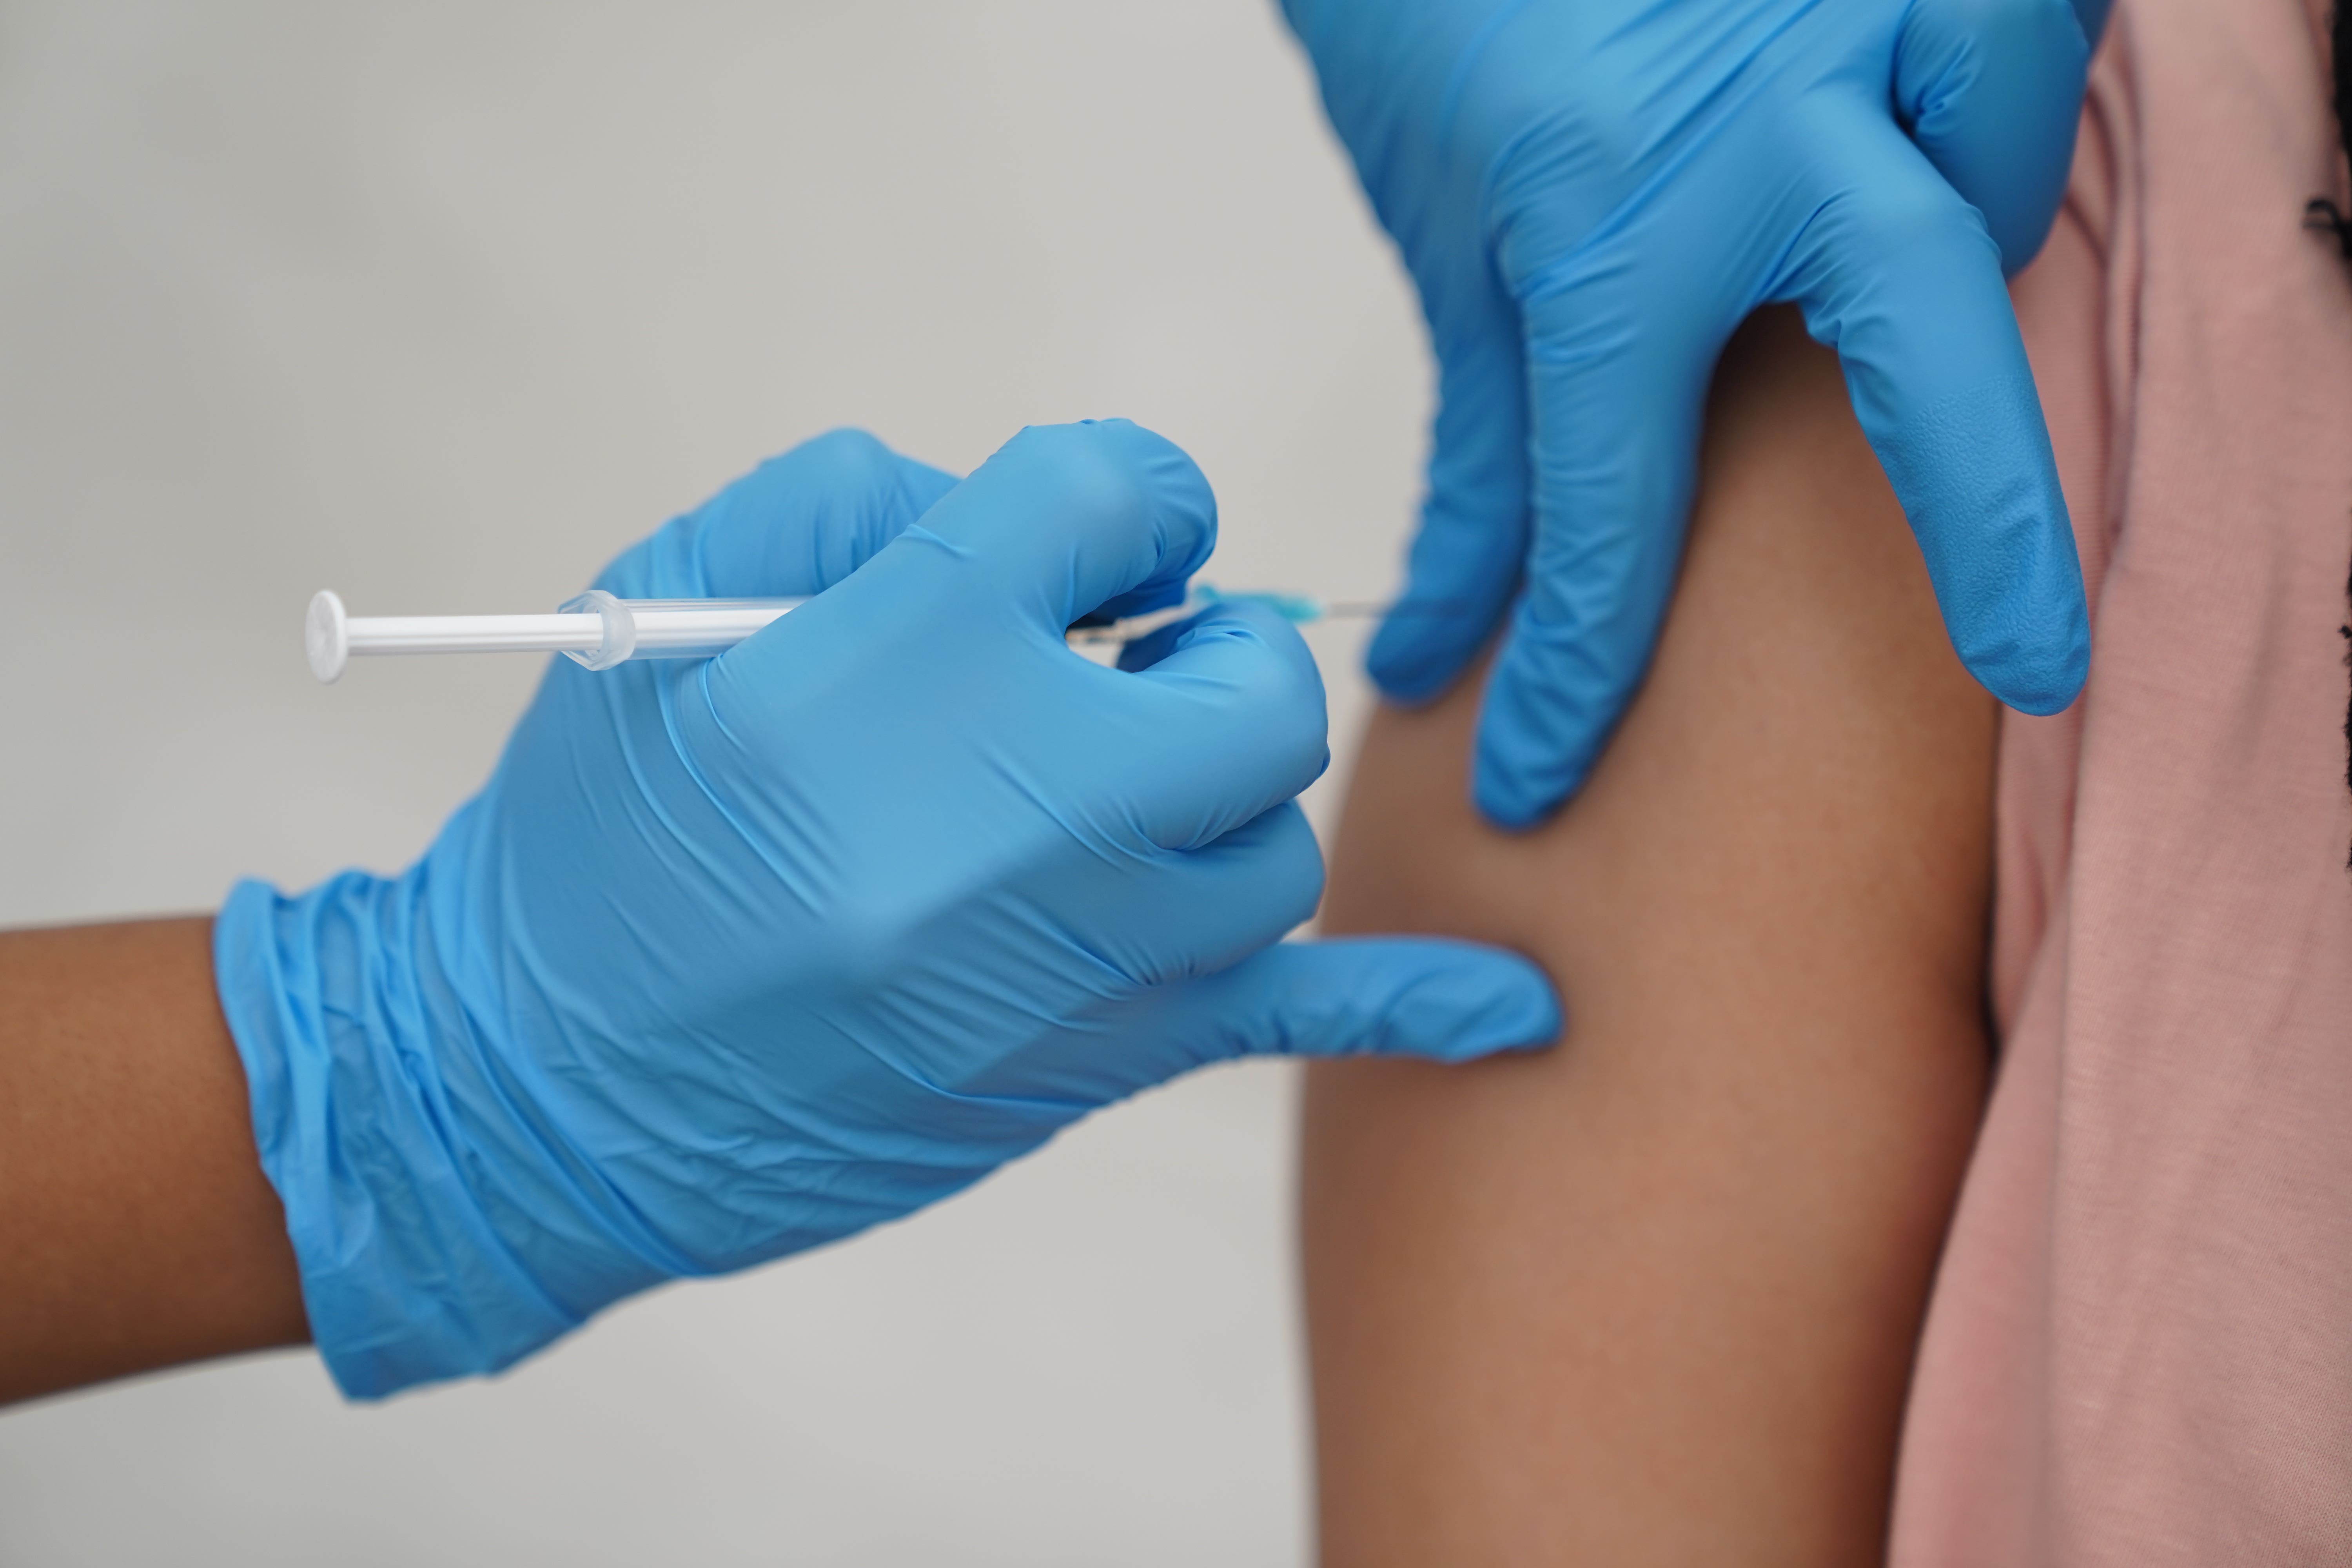 Solo alrededor del 7 por ciento de los estadounidenses que cumplen los requisitos han recibido la última vacuna contra la ómicron, según las cifras